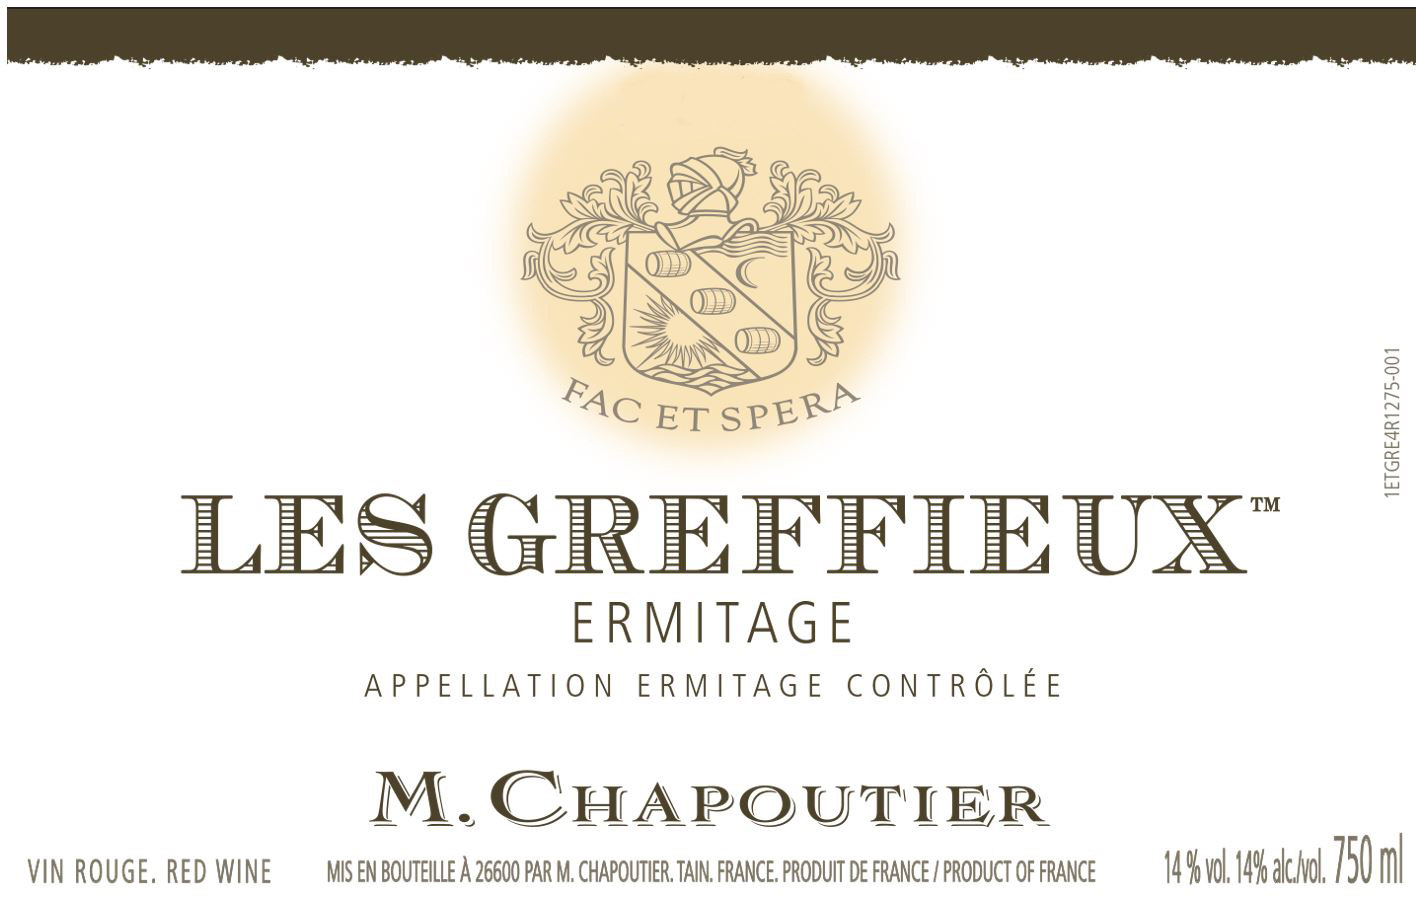 Chapoutier - Ermitage Les Greffieux Rouge label